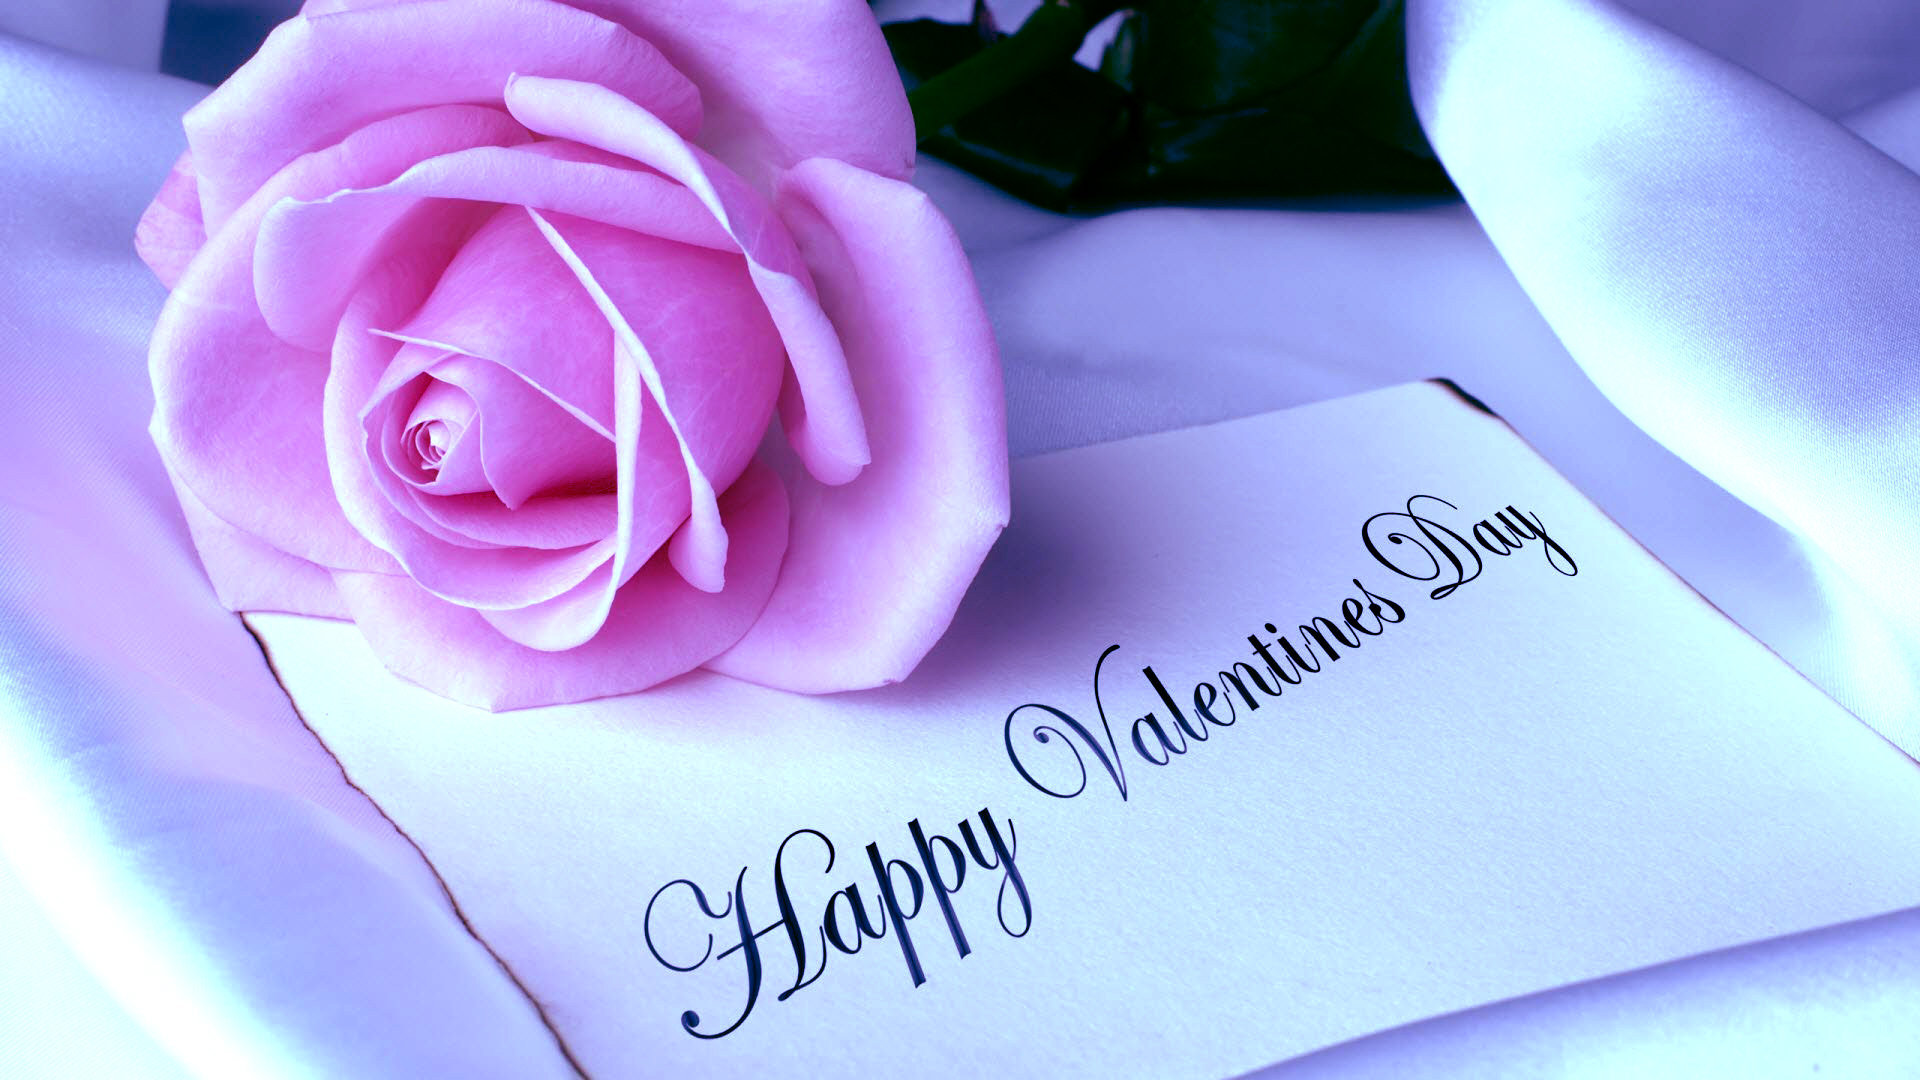 felice giorno di san valentino wallpaper hd,viola,testo,petalo,rosa,fiore